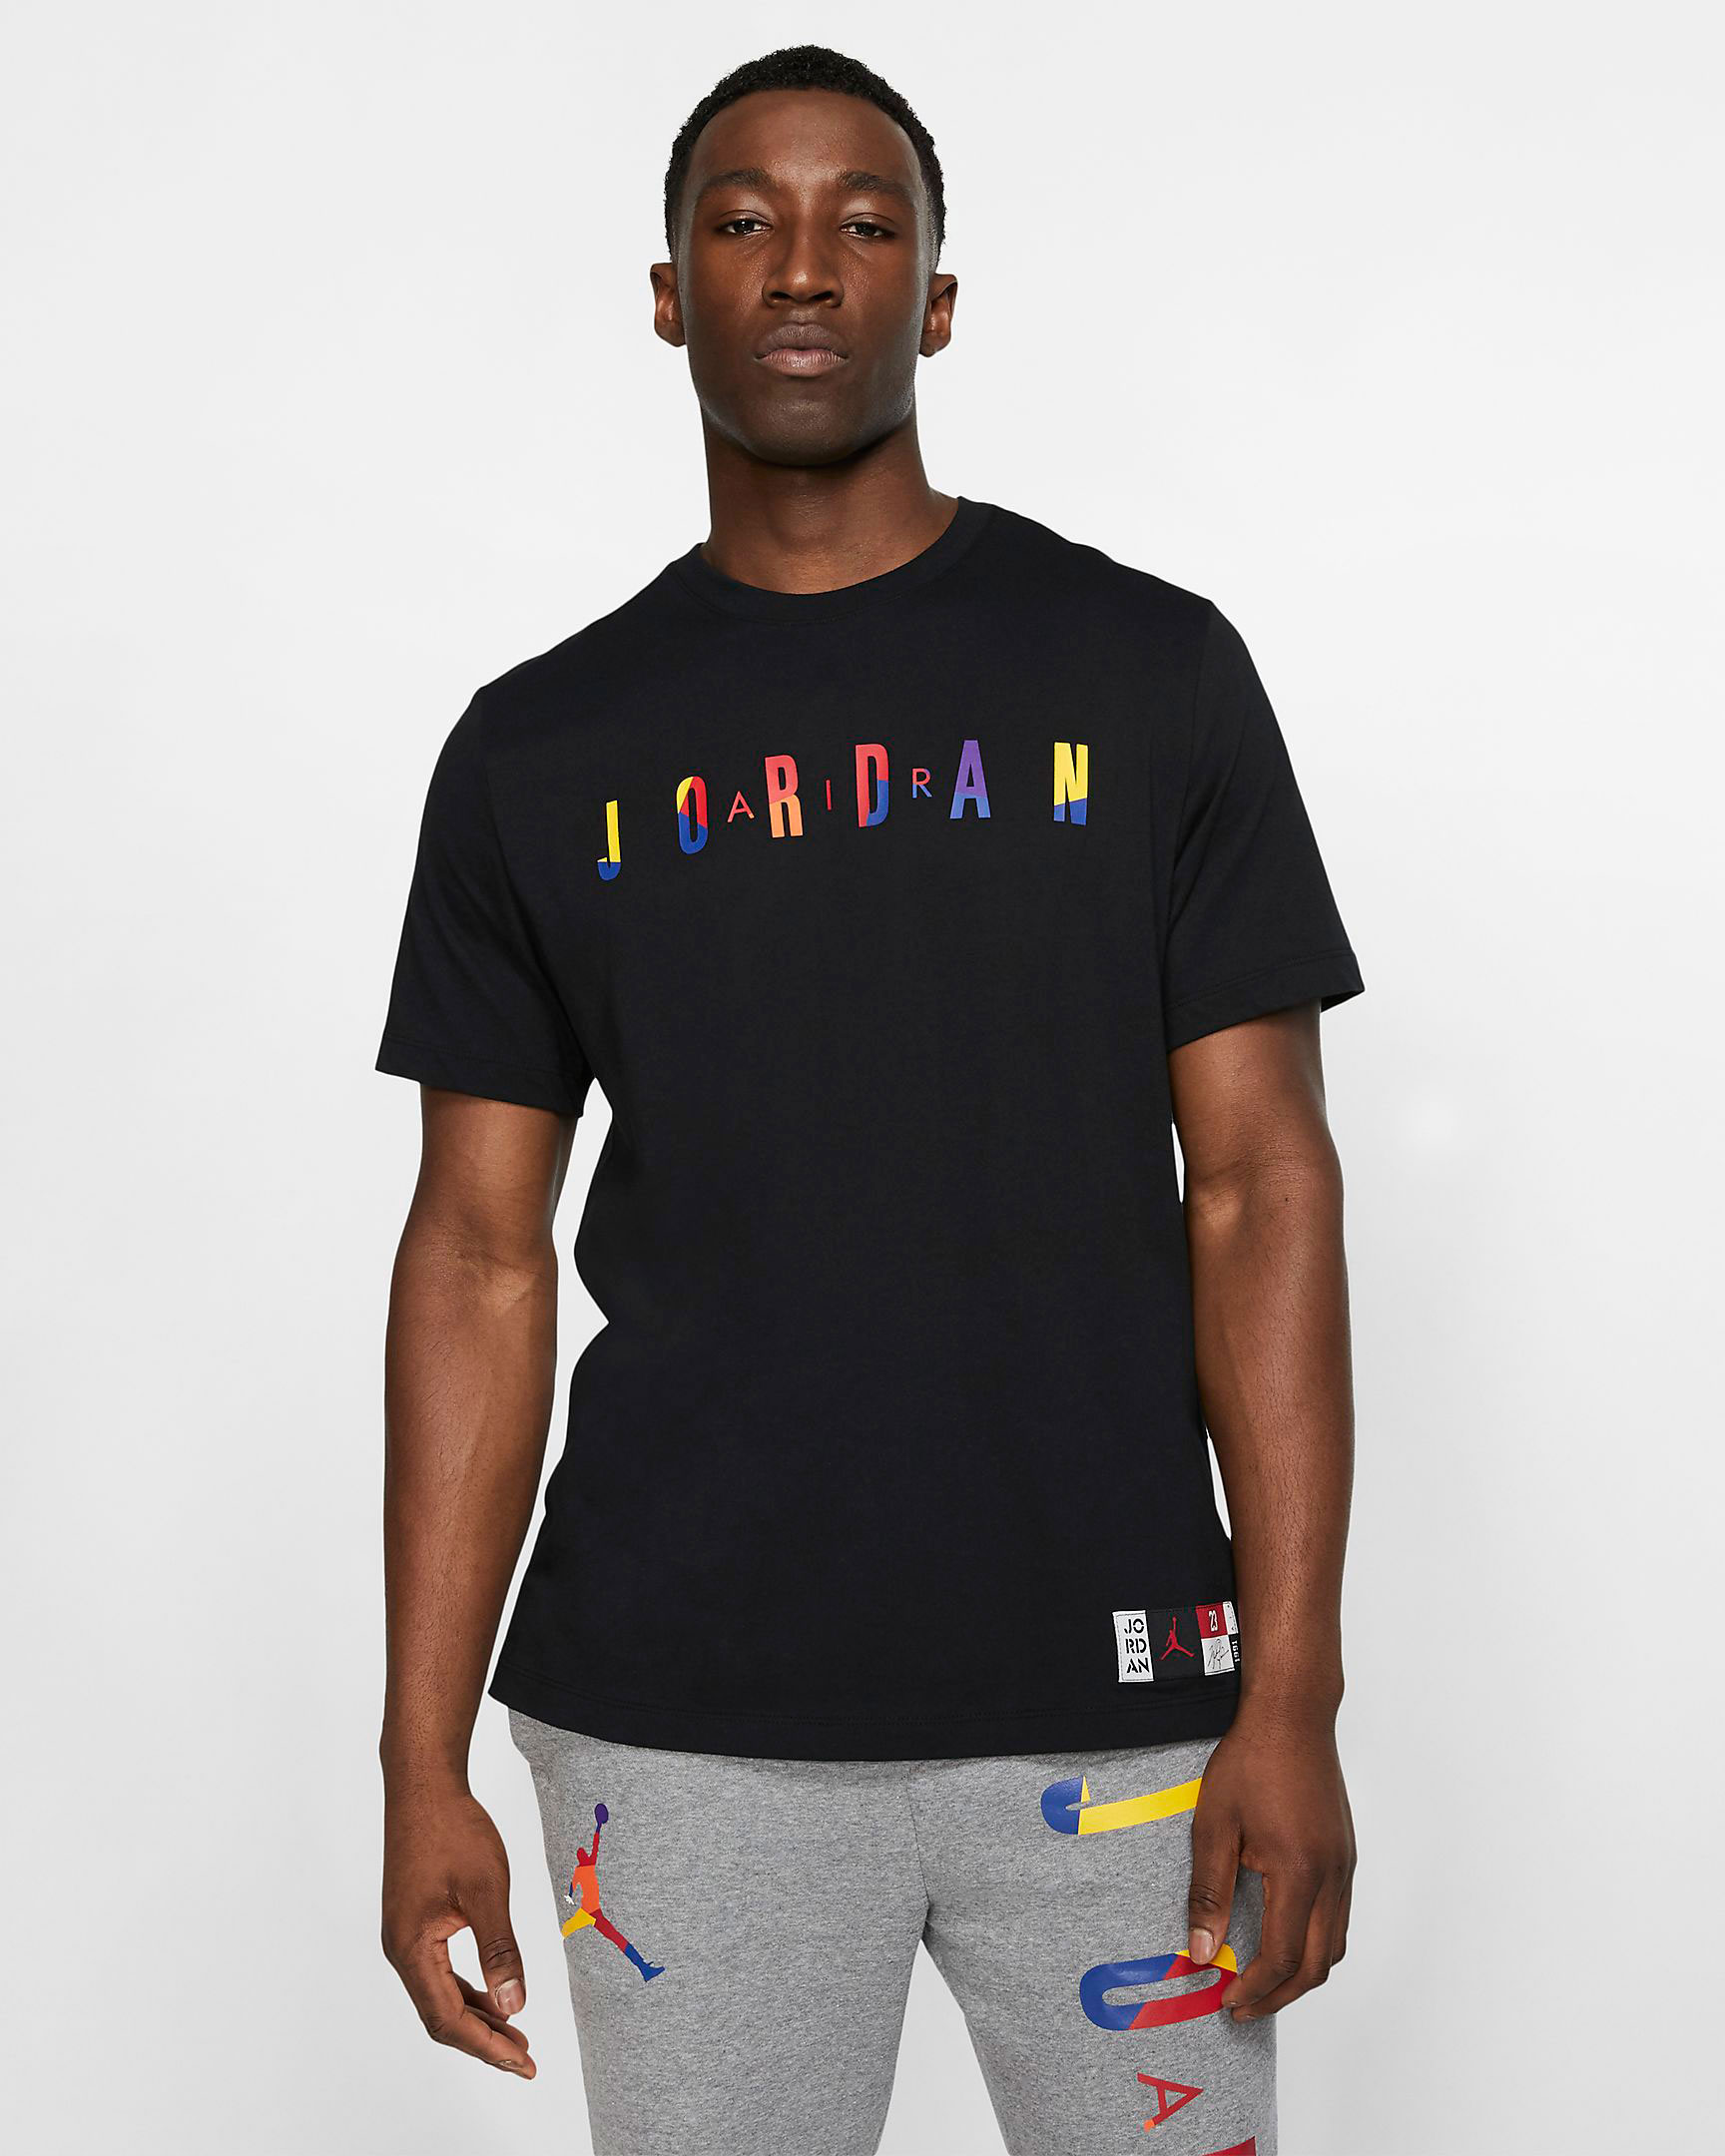 Lakers Air Jordan 13 Hat and Shirt 